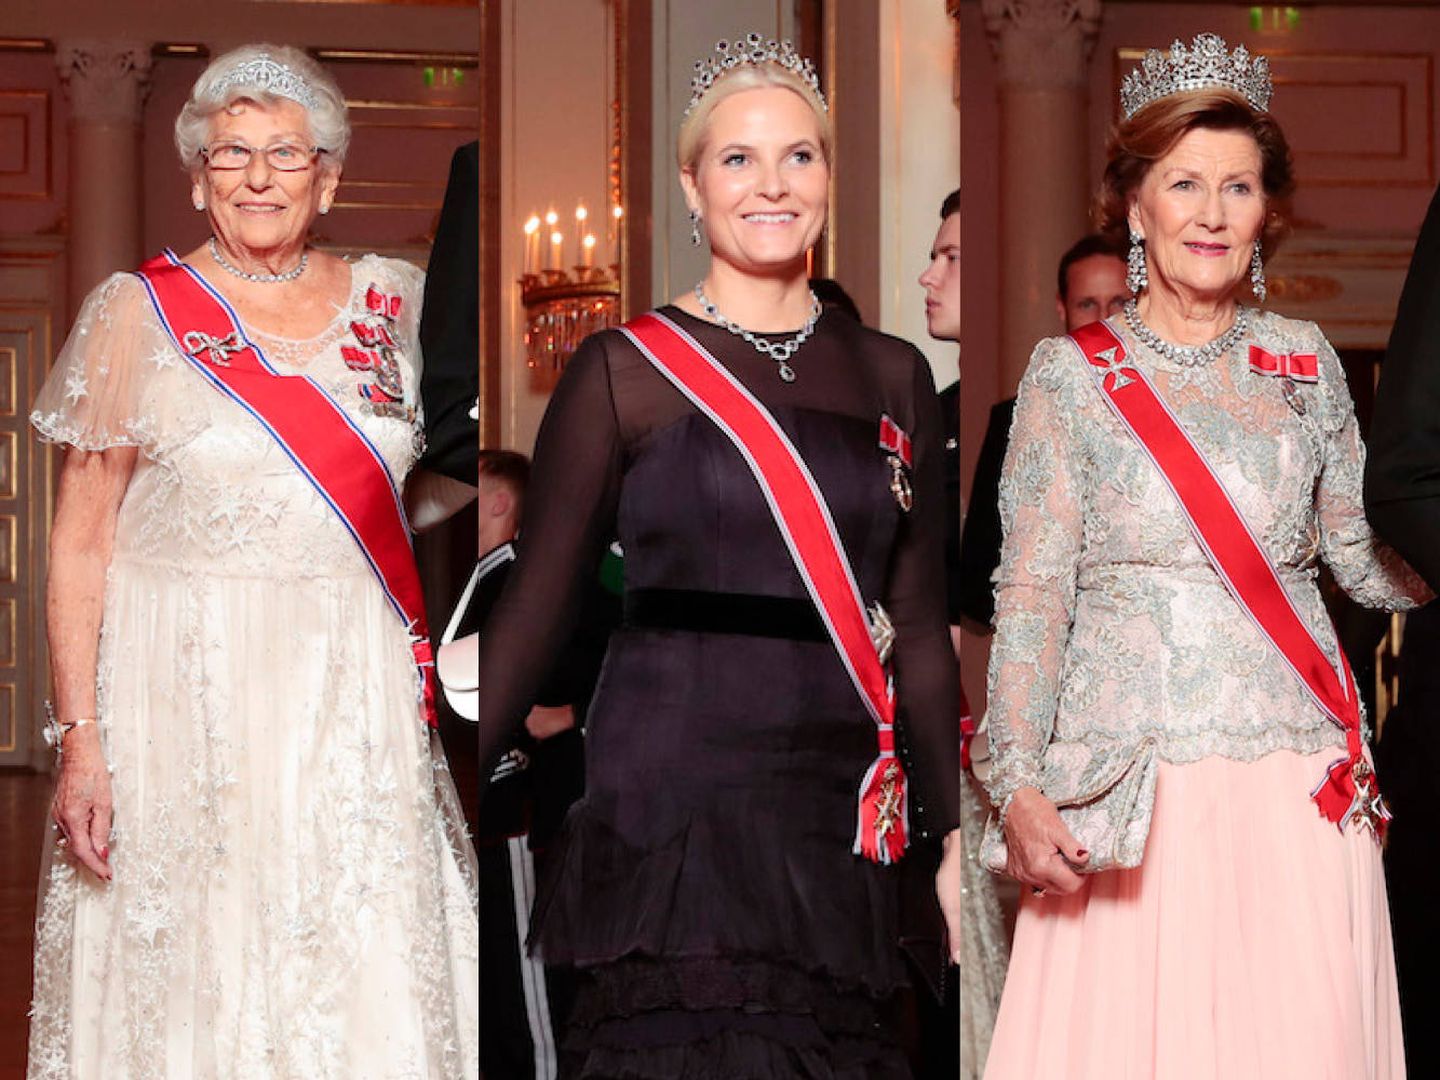 Astrid, Mette-Marit y Sonia. (Royal Court Norway)